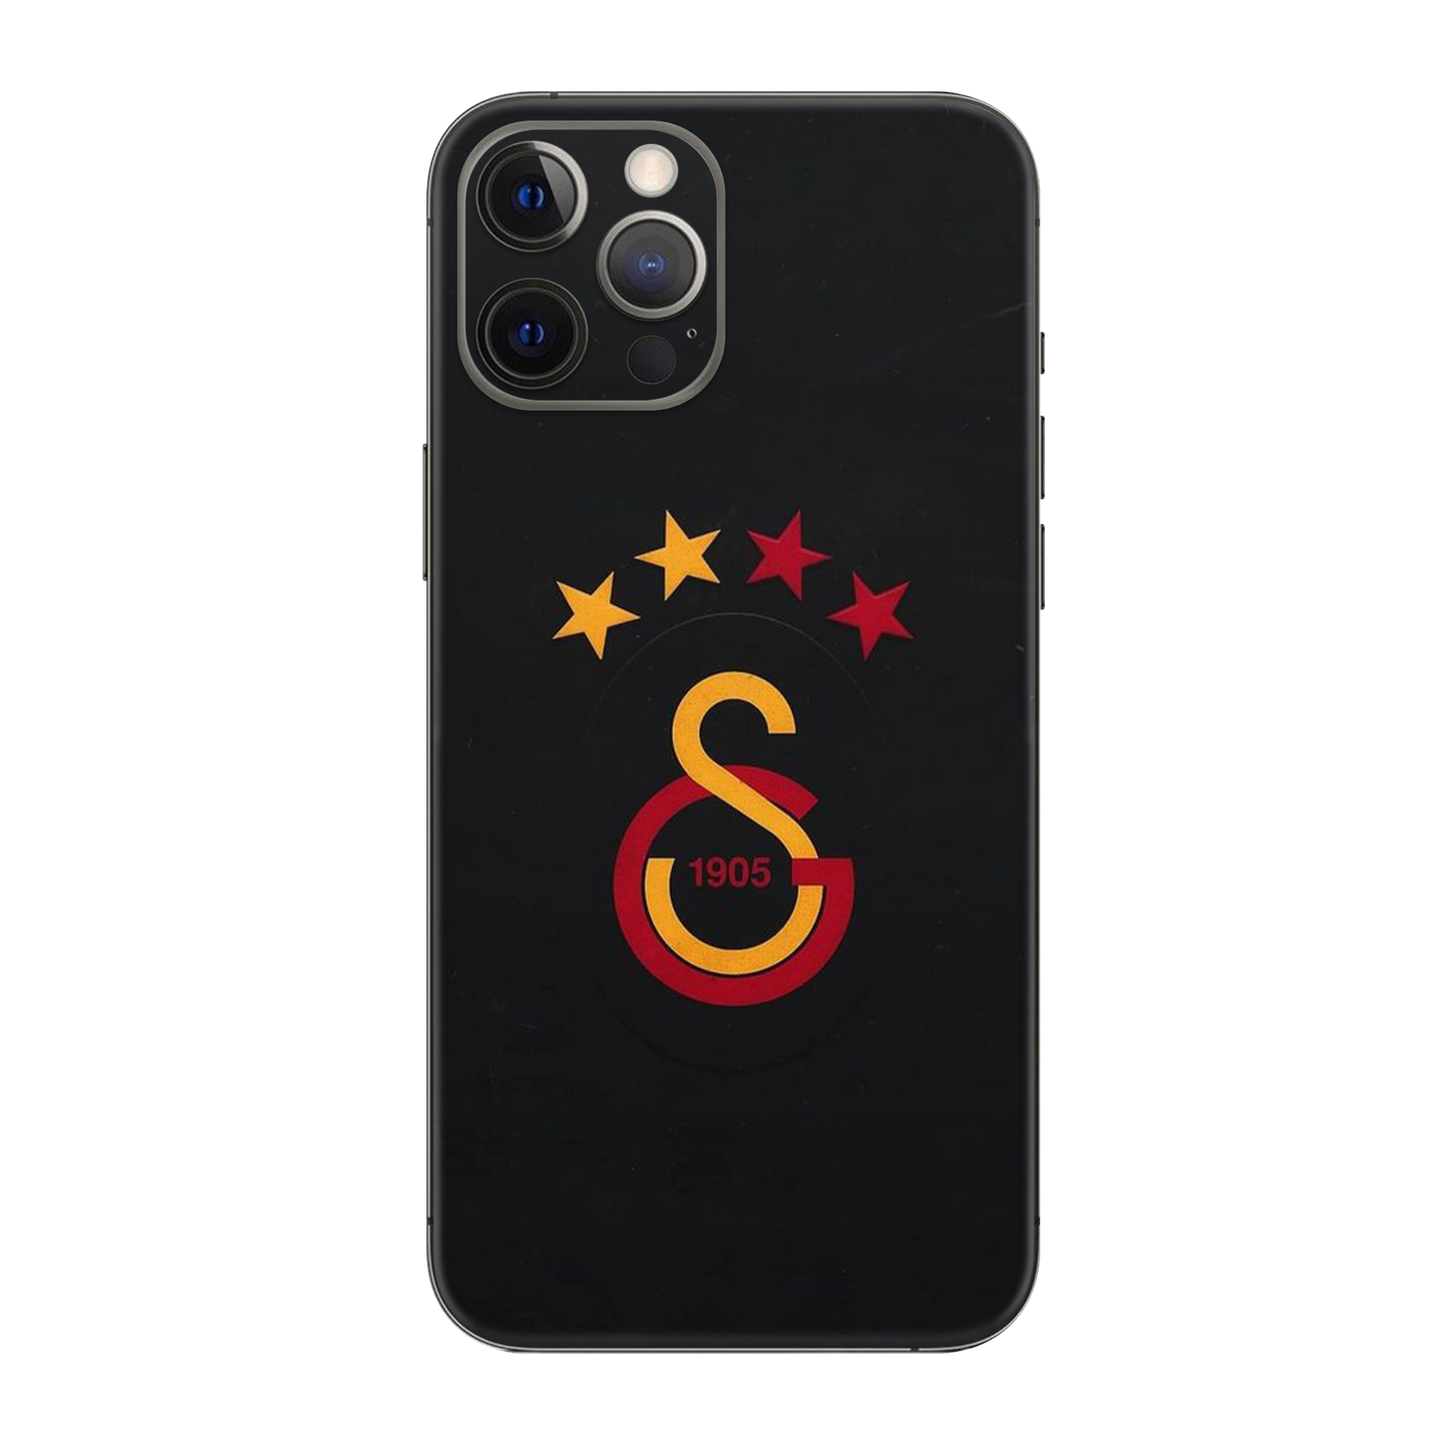 Backside Skin-Galatasaray-4 - Für alle Smartphones bis 7 Zoll